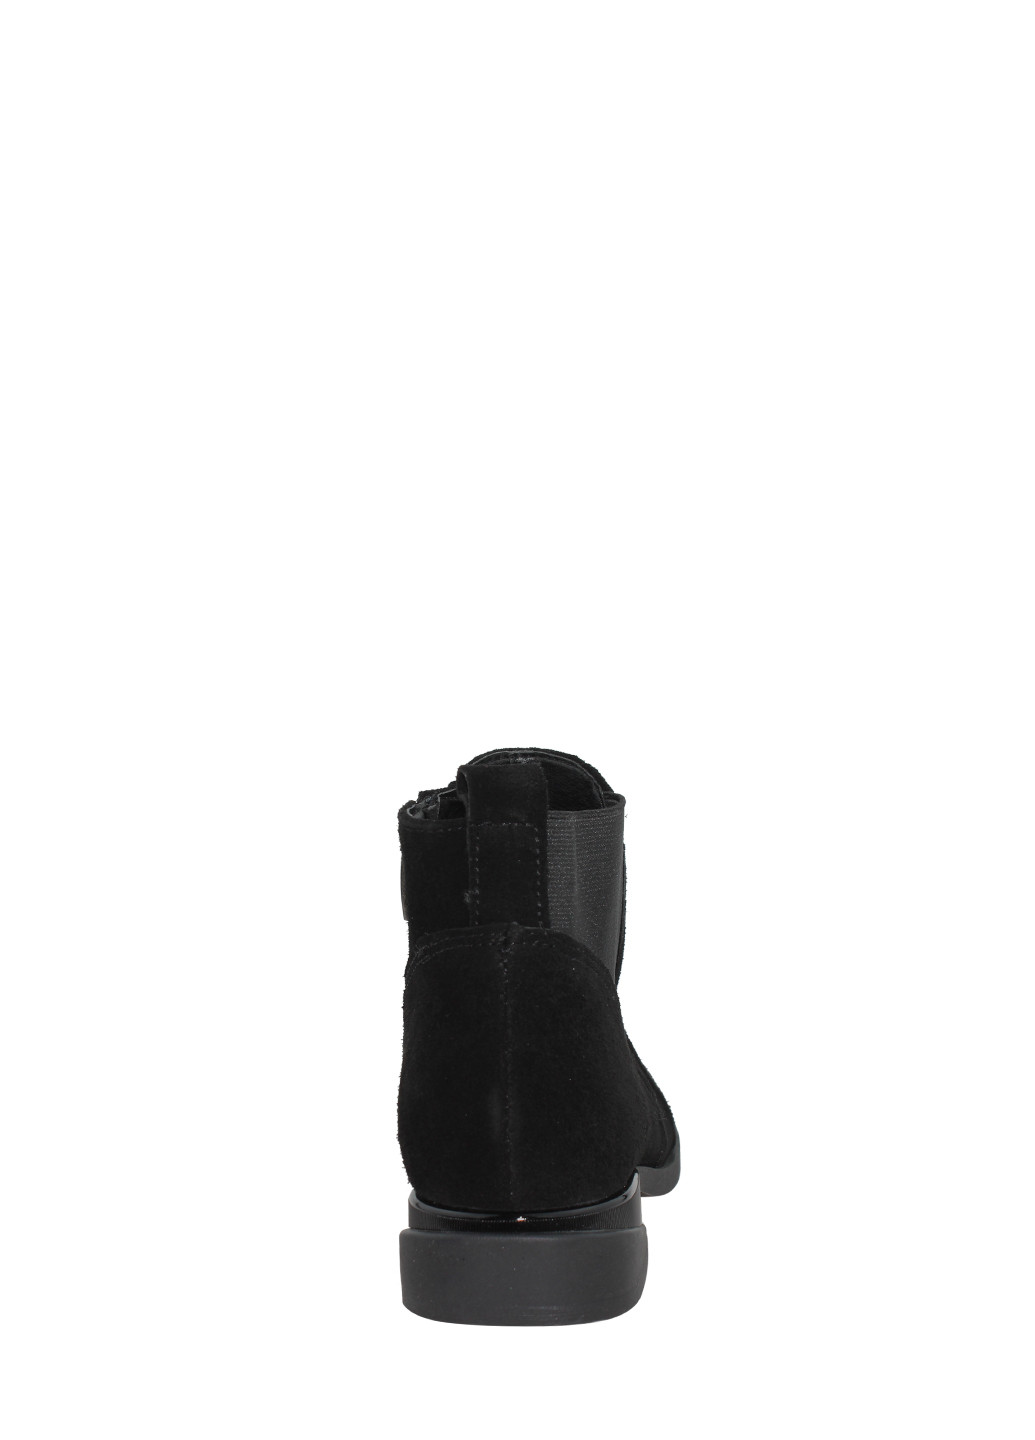 Осенние ботинки raz-263-11 черный Alvista из натуральной замши